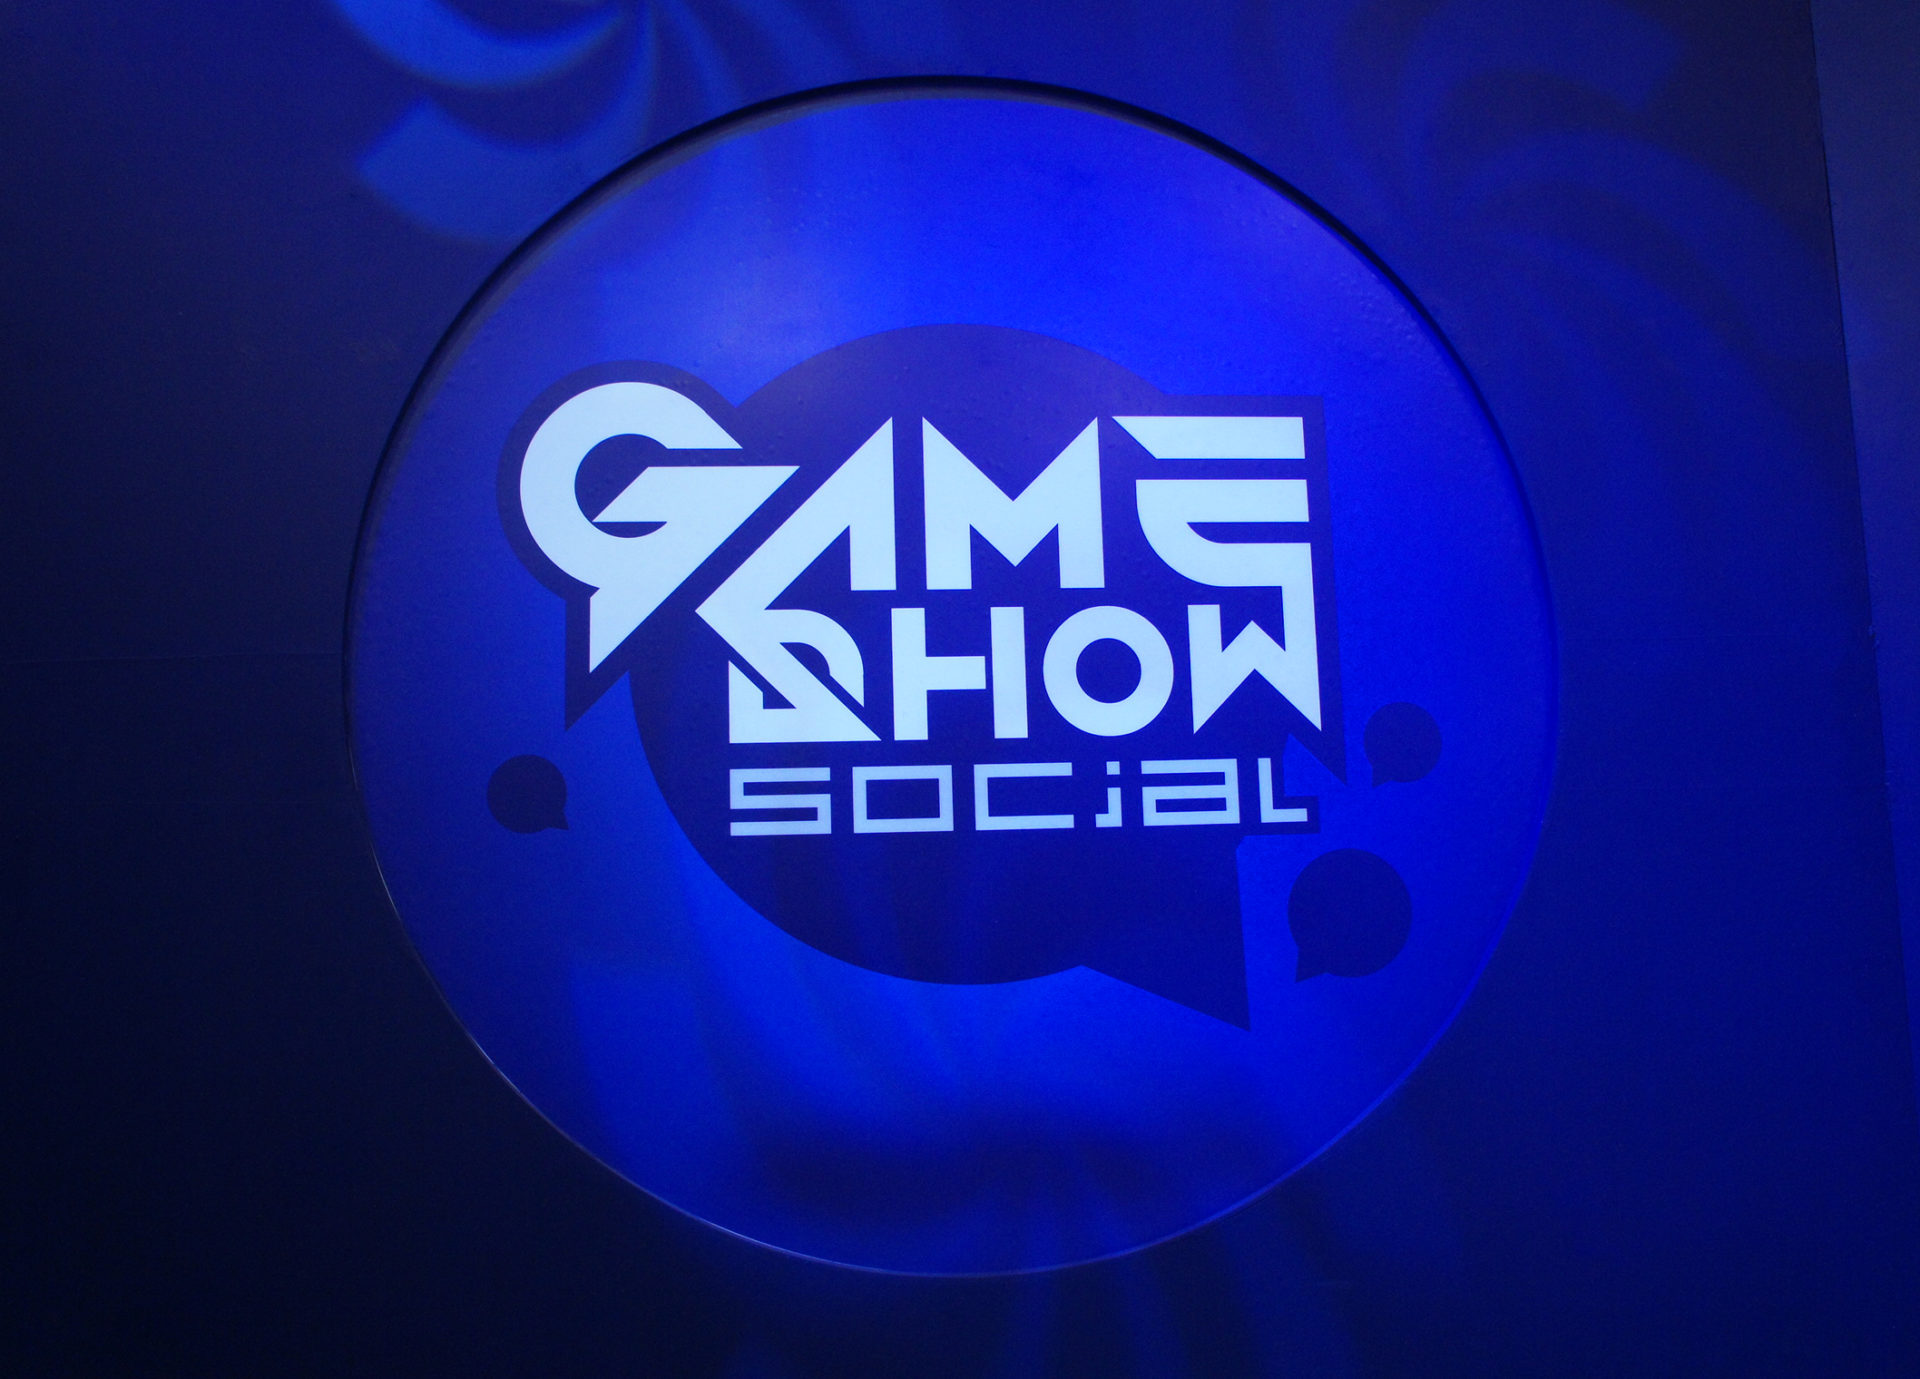 แจ้งปิดระบบ Game Show Social ชั่วคราว!